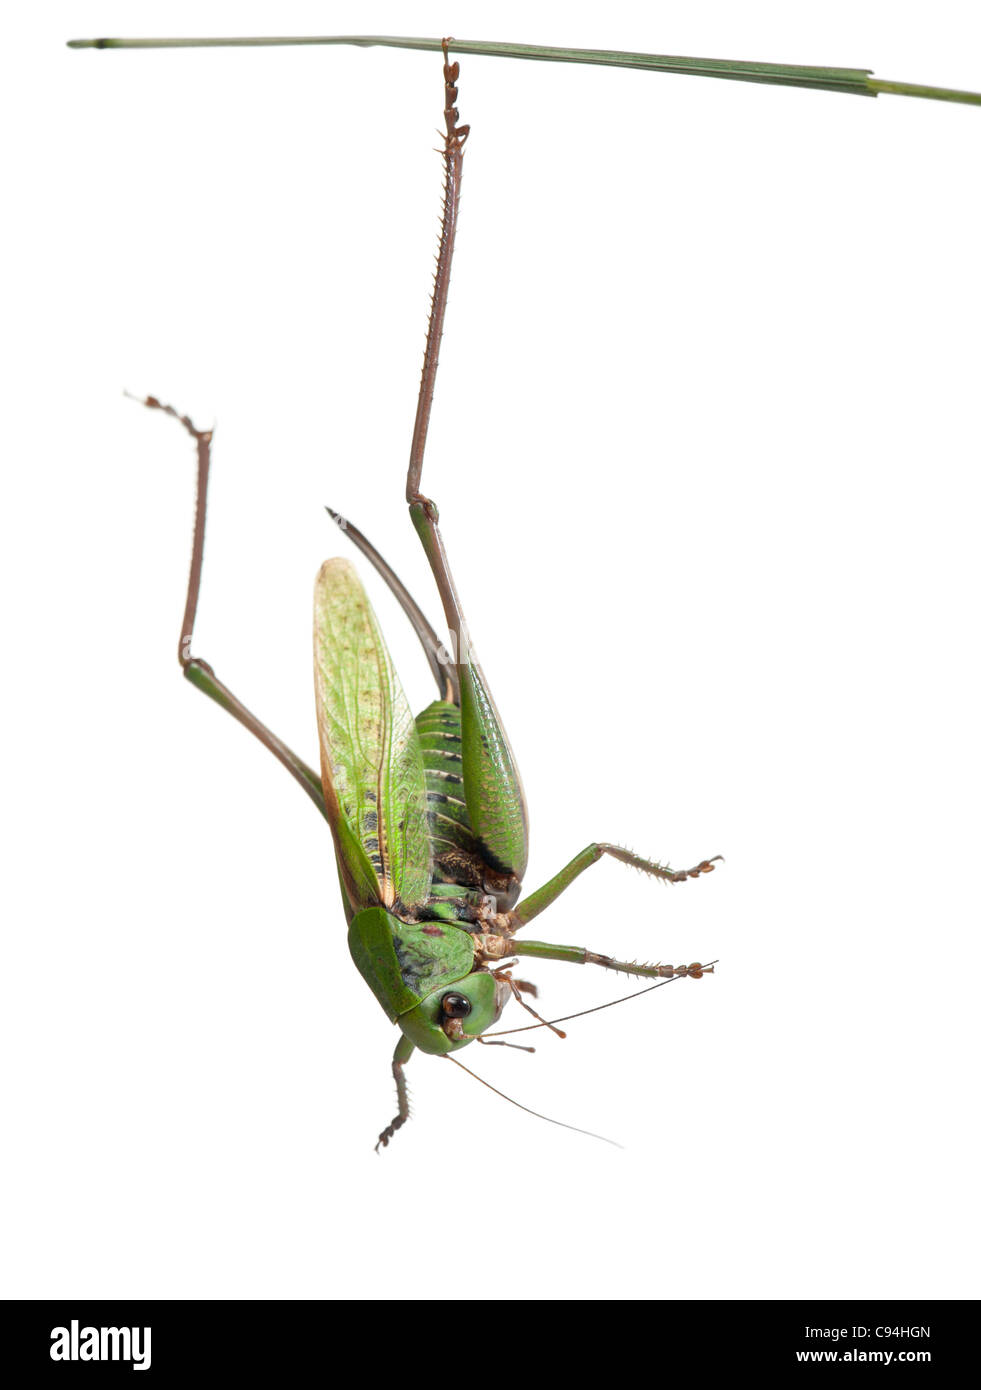 Femmina-verruca snapper, una bussola-cricket, Decticus verrucivorus, di fronte a uno sfondo bianco Foto Stock